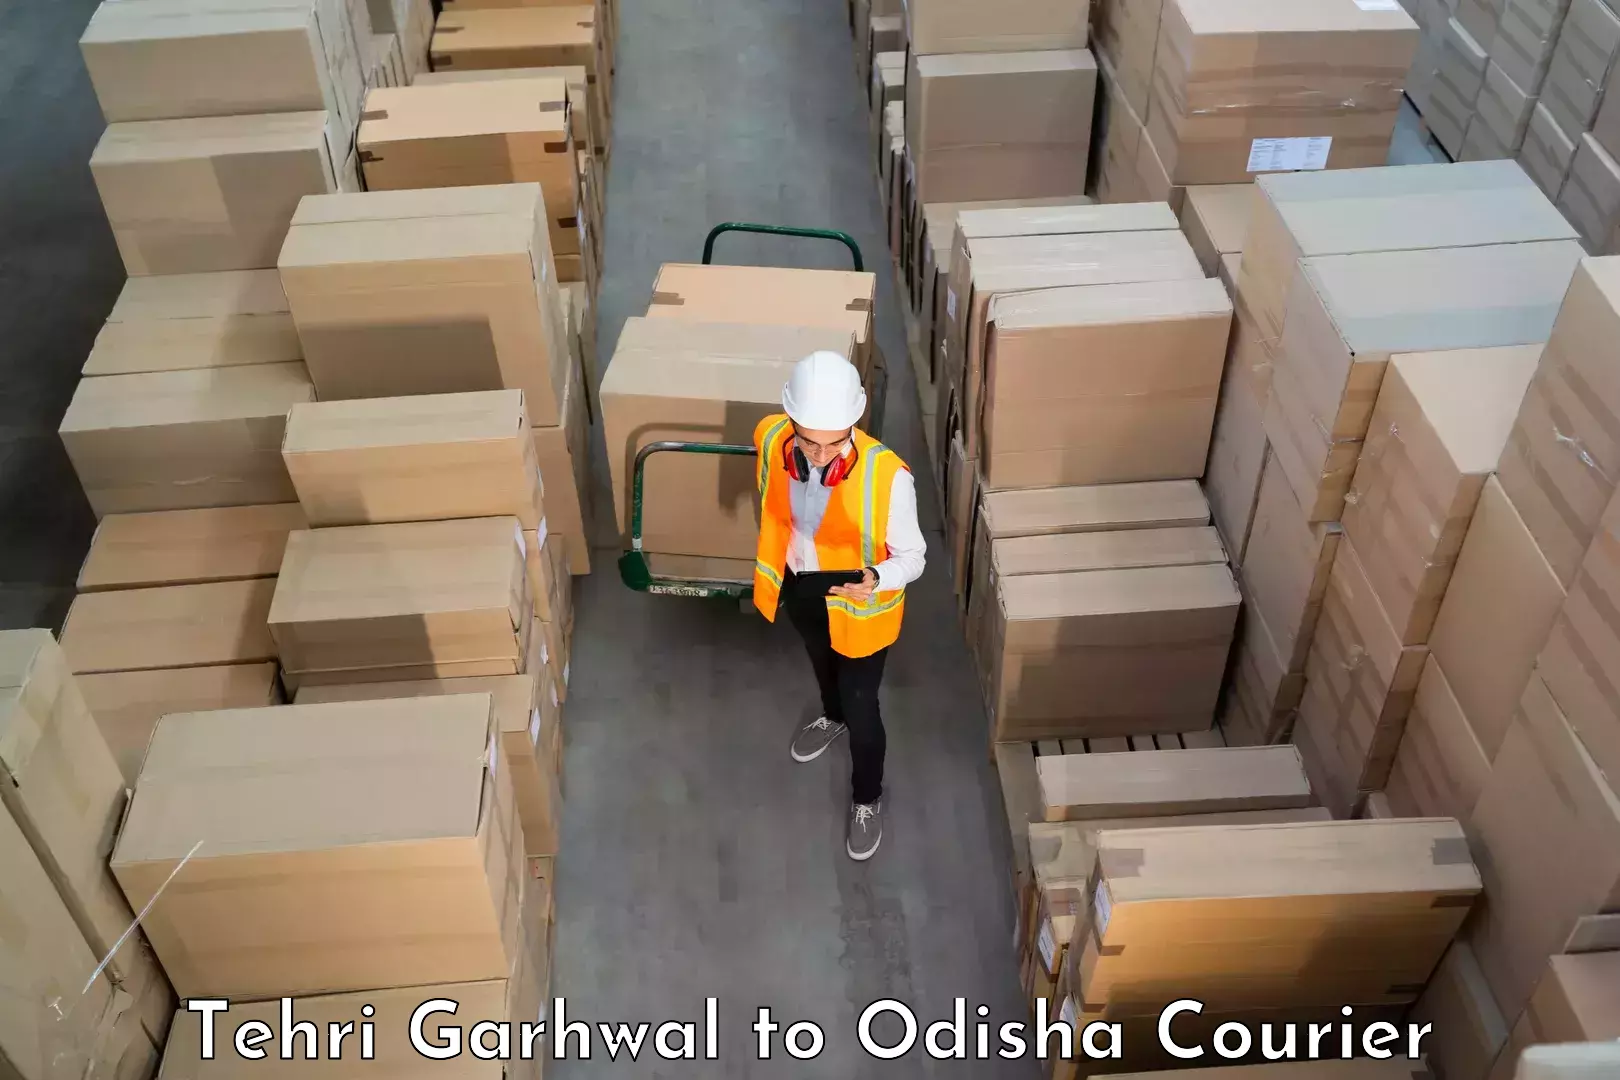 Skilled furniture transporters Tehri Garhwal to Agarpada